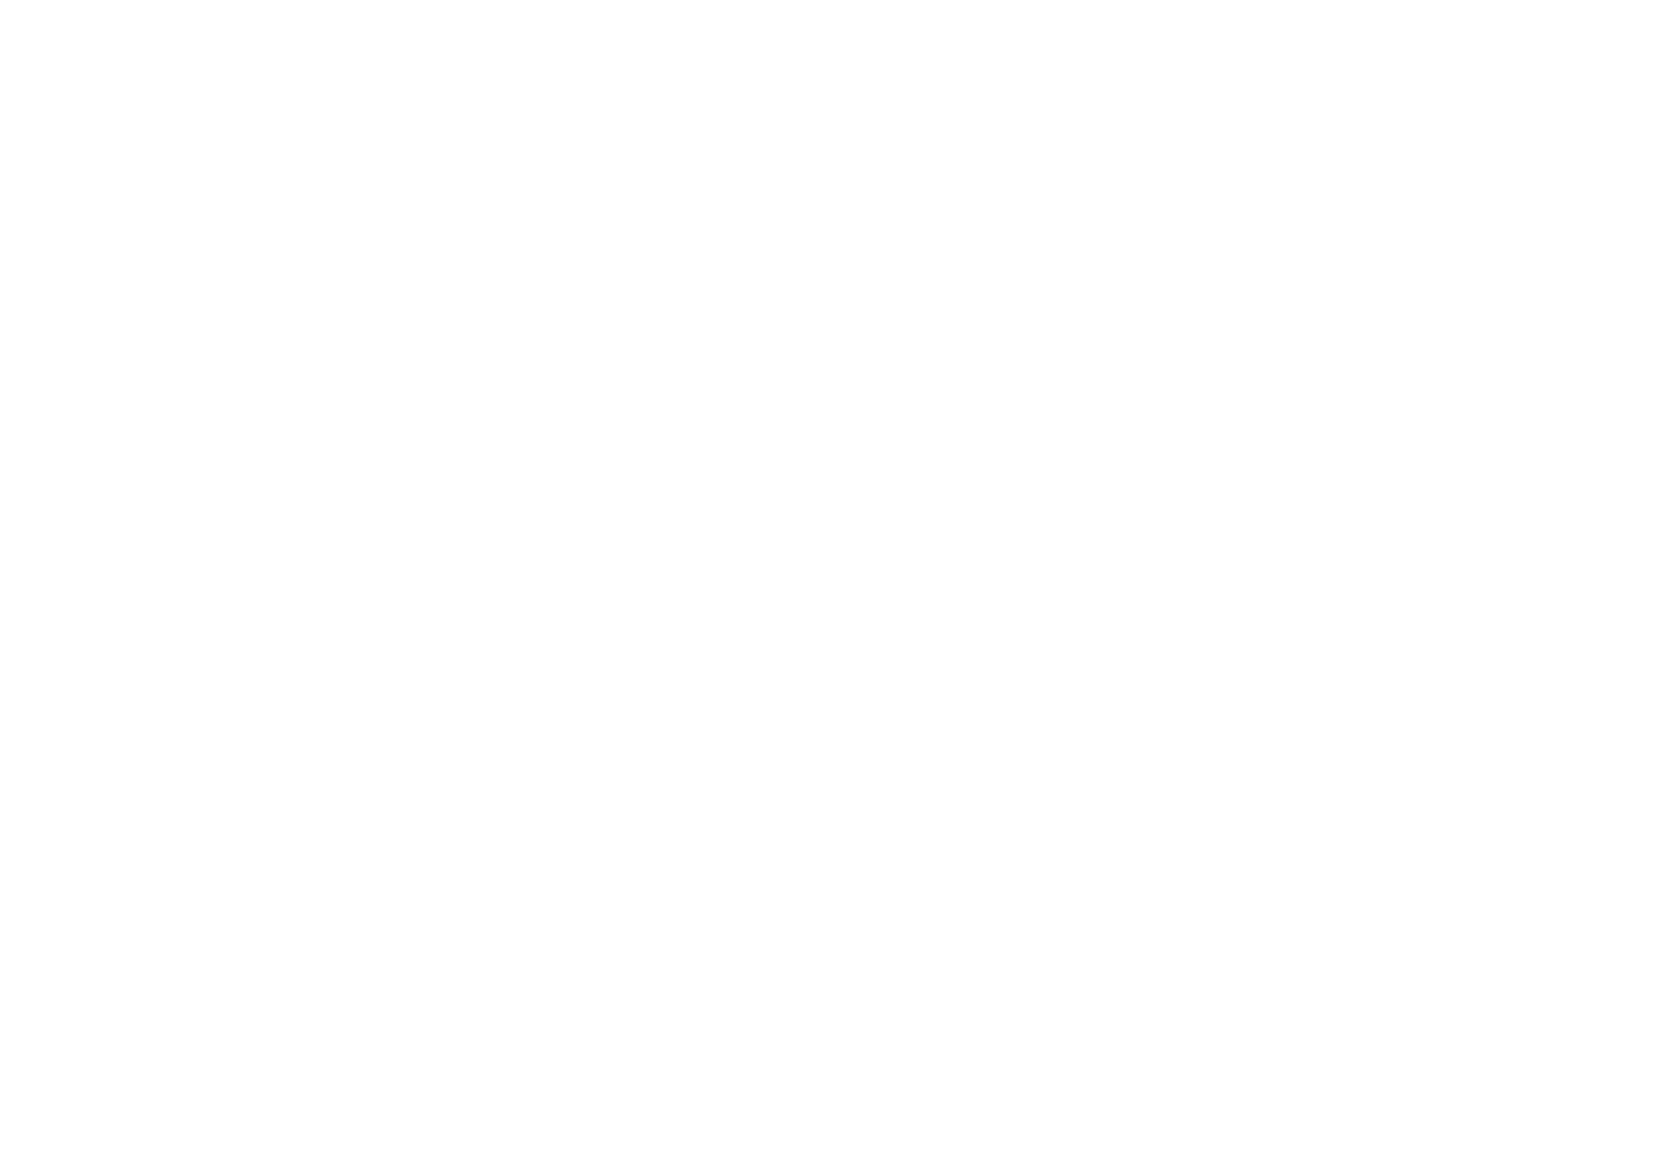 Уткинская пристань. Люди провожают отплывающие по Чусовой барки. 1900 г. Частный архив